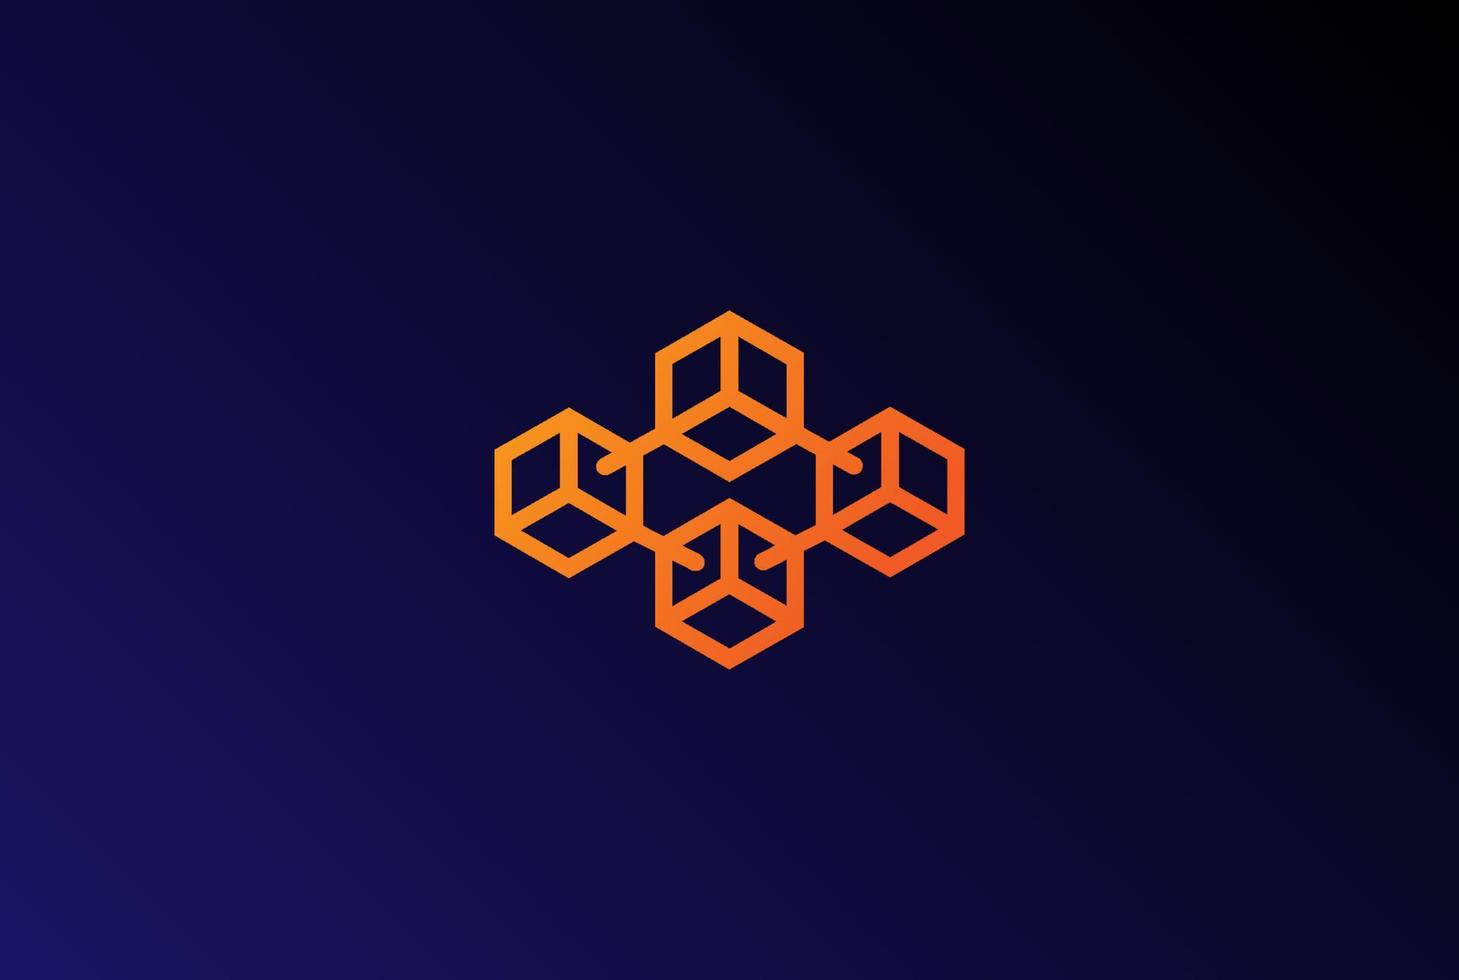 création de logo de chaîne de bloc de cube de boîte minimaliste simple géométrique moderne vecteur